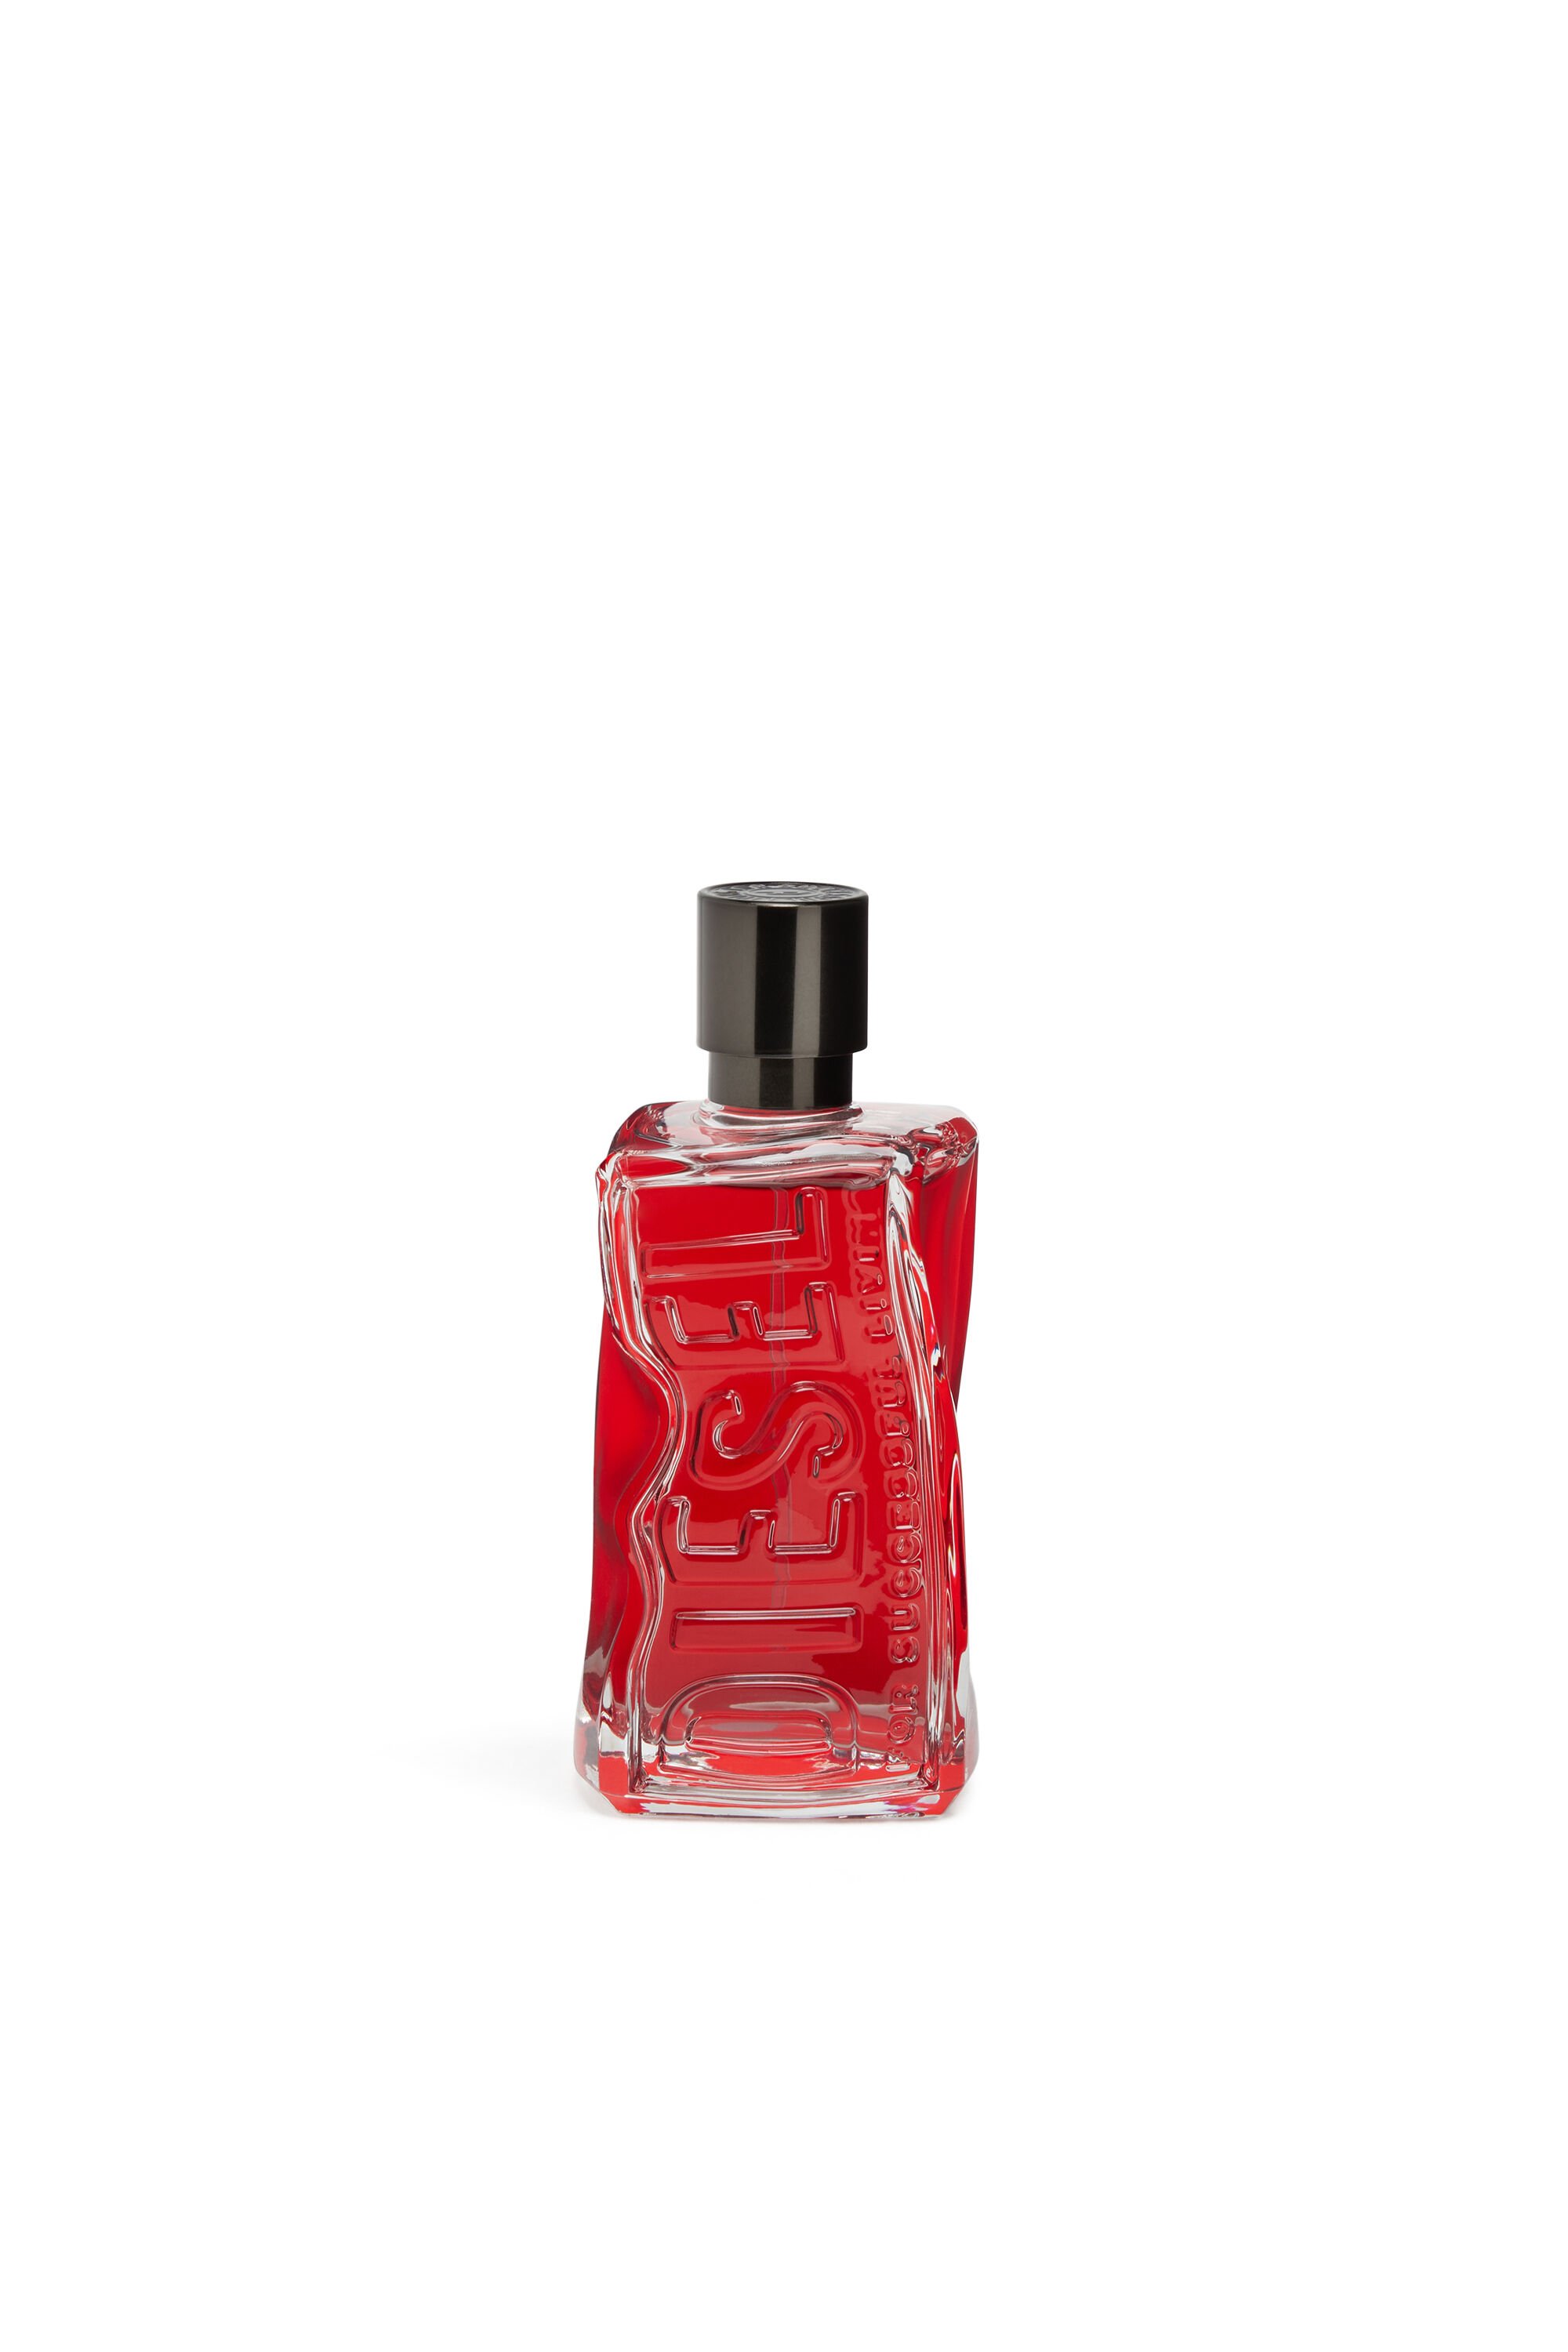 Diesel - D RED 50 ML, Hombre D RED 50ml, Eau de Parfum in Rojo - Image 1